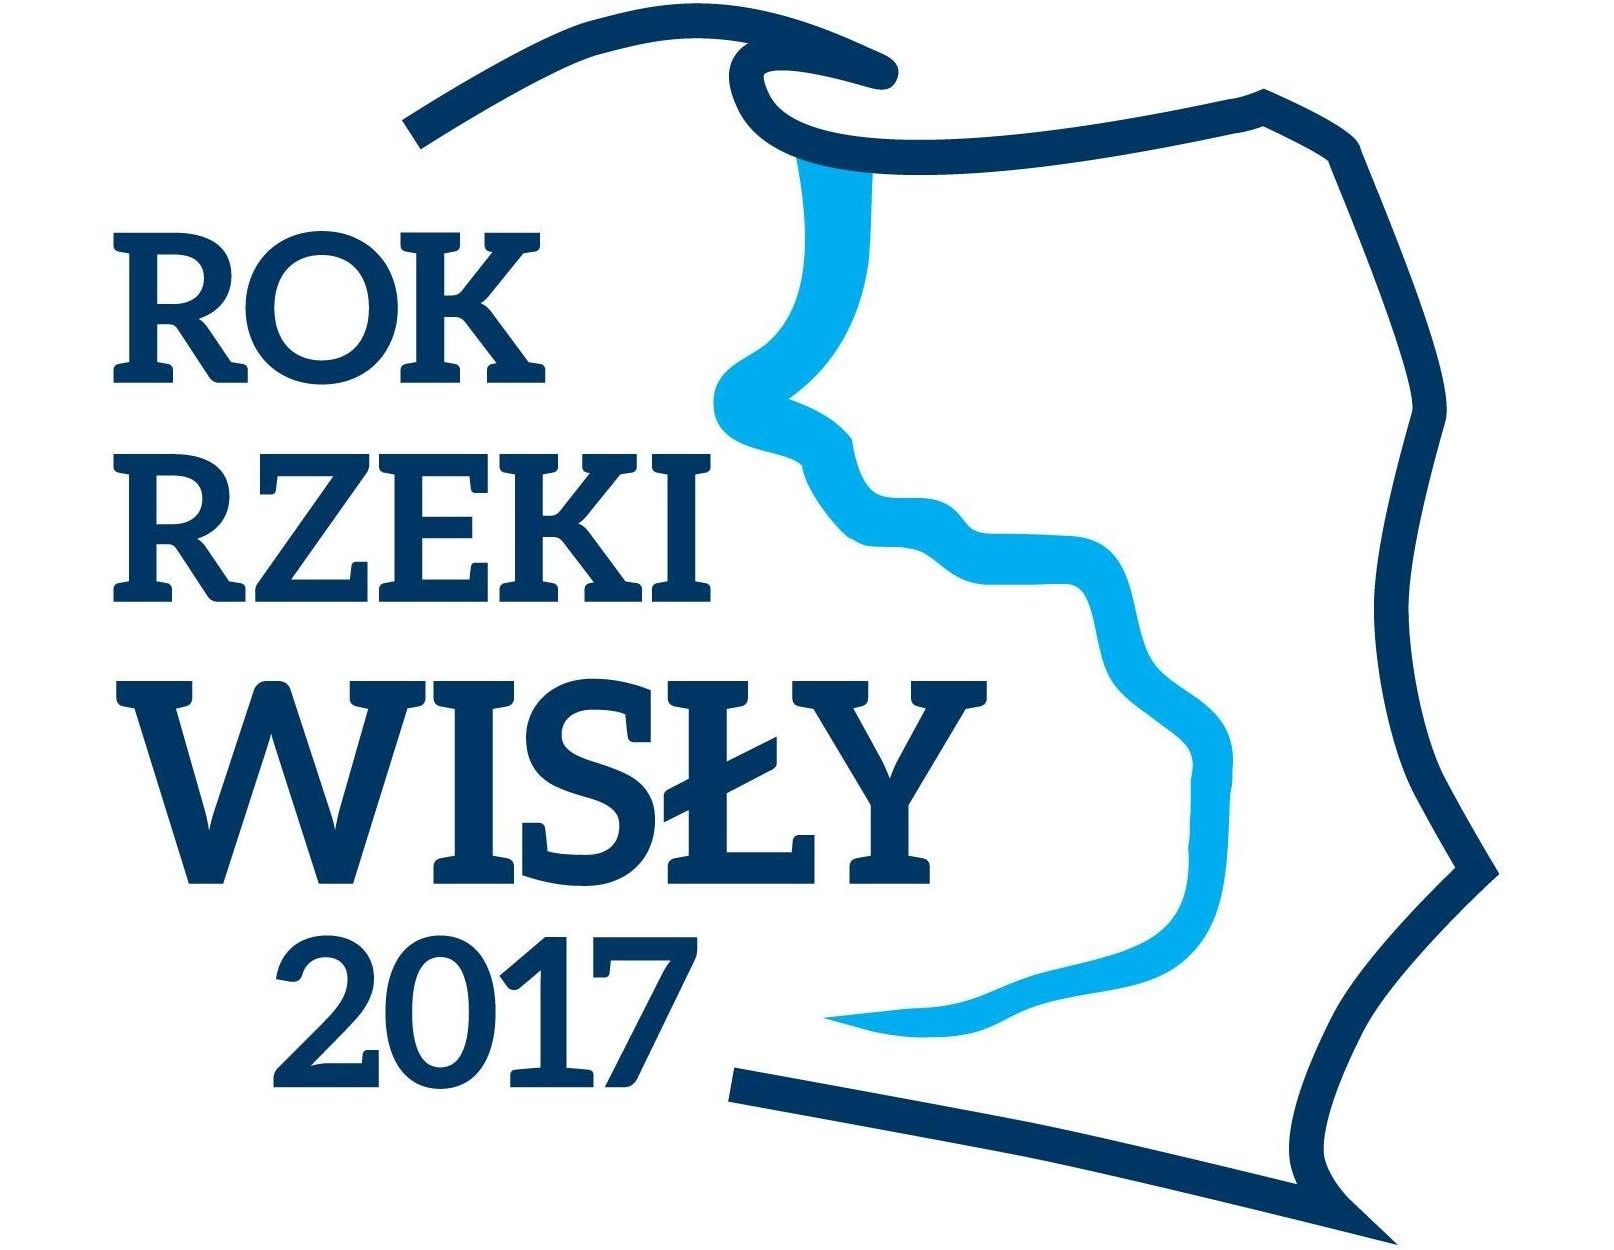 Rok Rzeki Wisły 2017